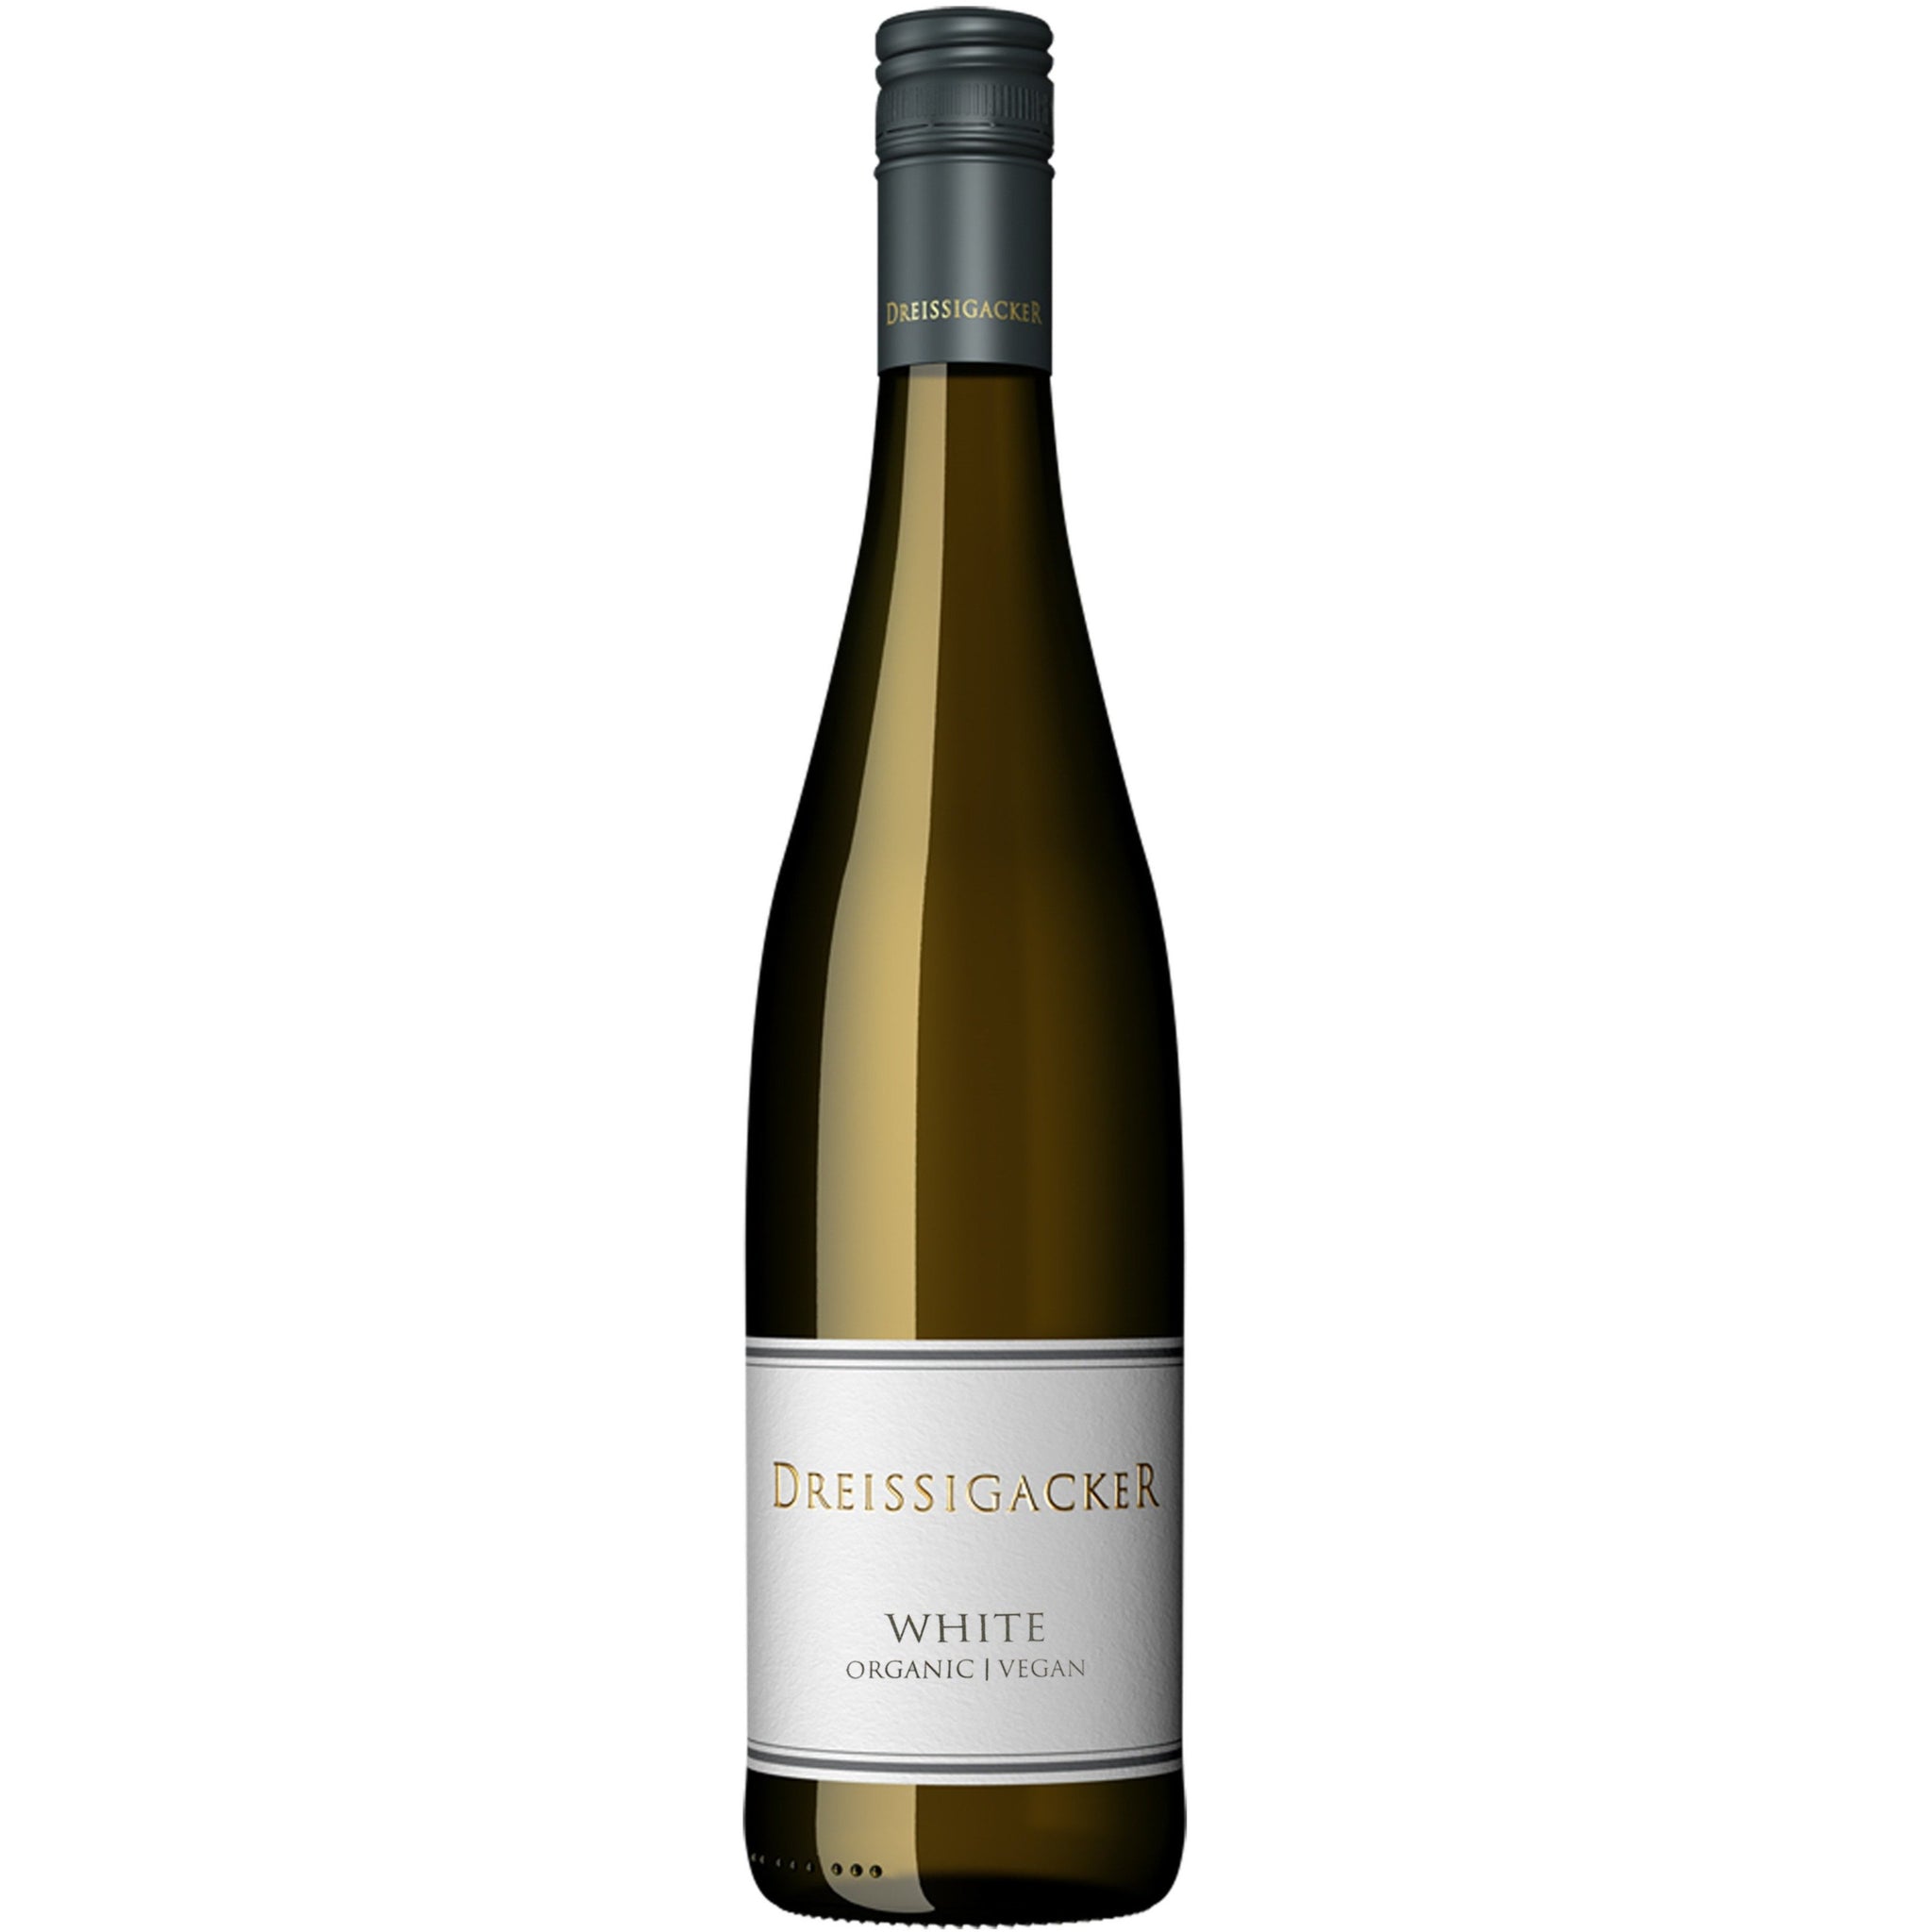 Dreissigacker 'Cuvée White' 2018, Rheinhessen